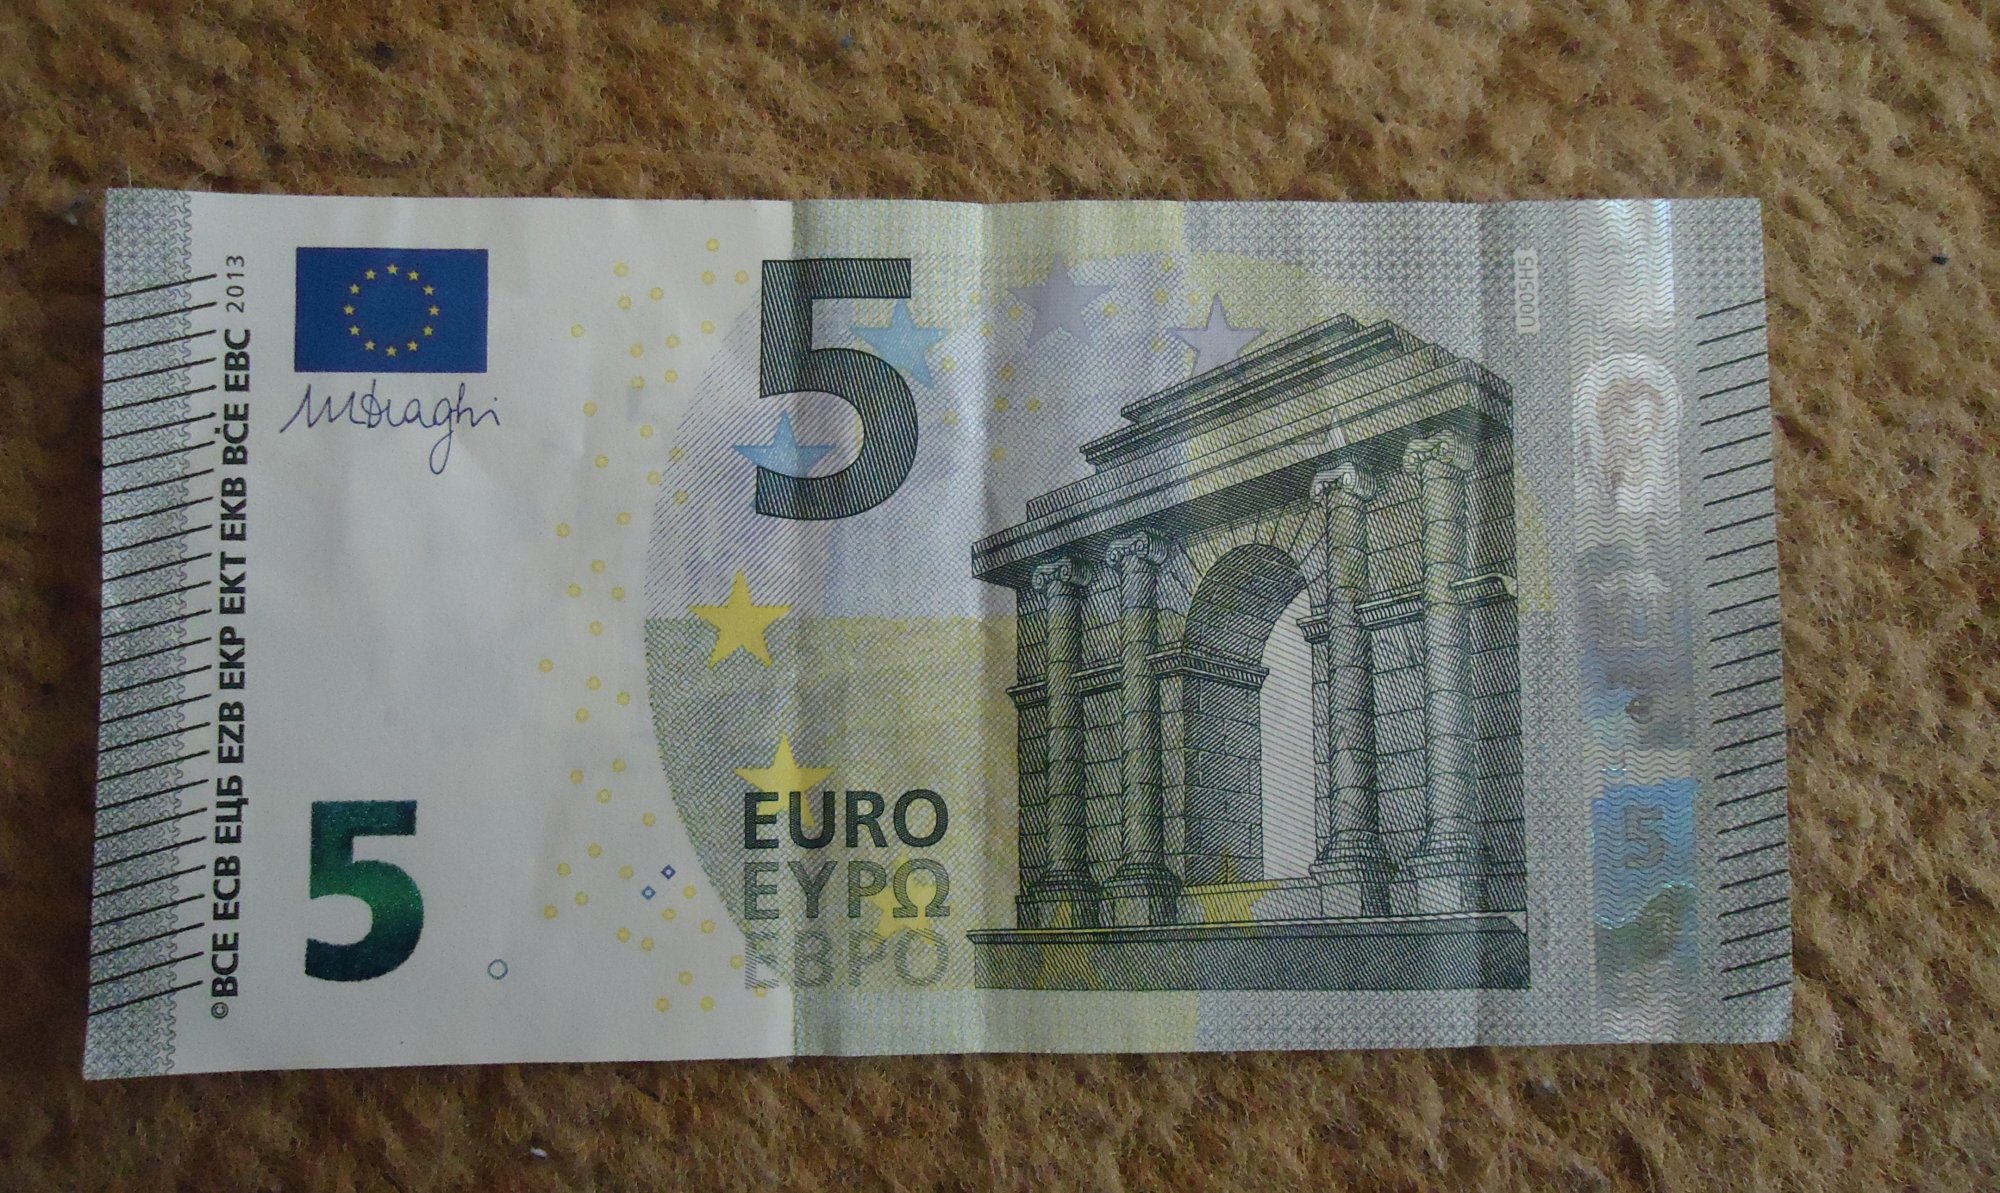 Премьер министр изображенный на 5 евро. 5 Евро купюра. 5 Евро банкноты евро. 5 Евро купюра современная. Купюра 5 евро 2013.